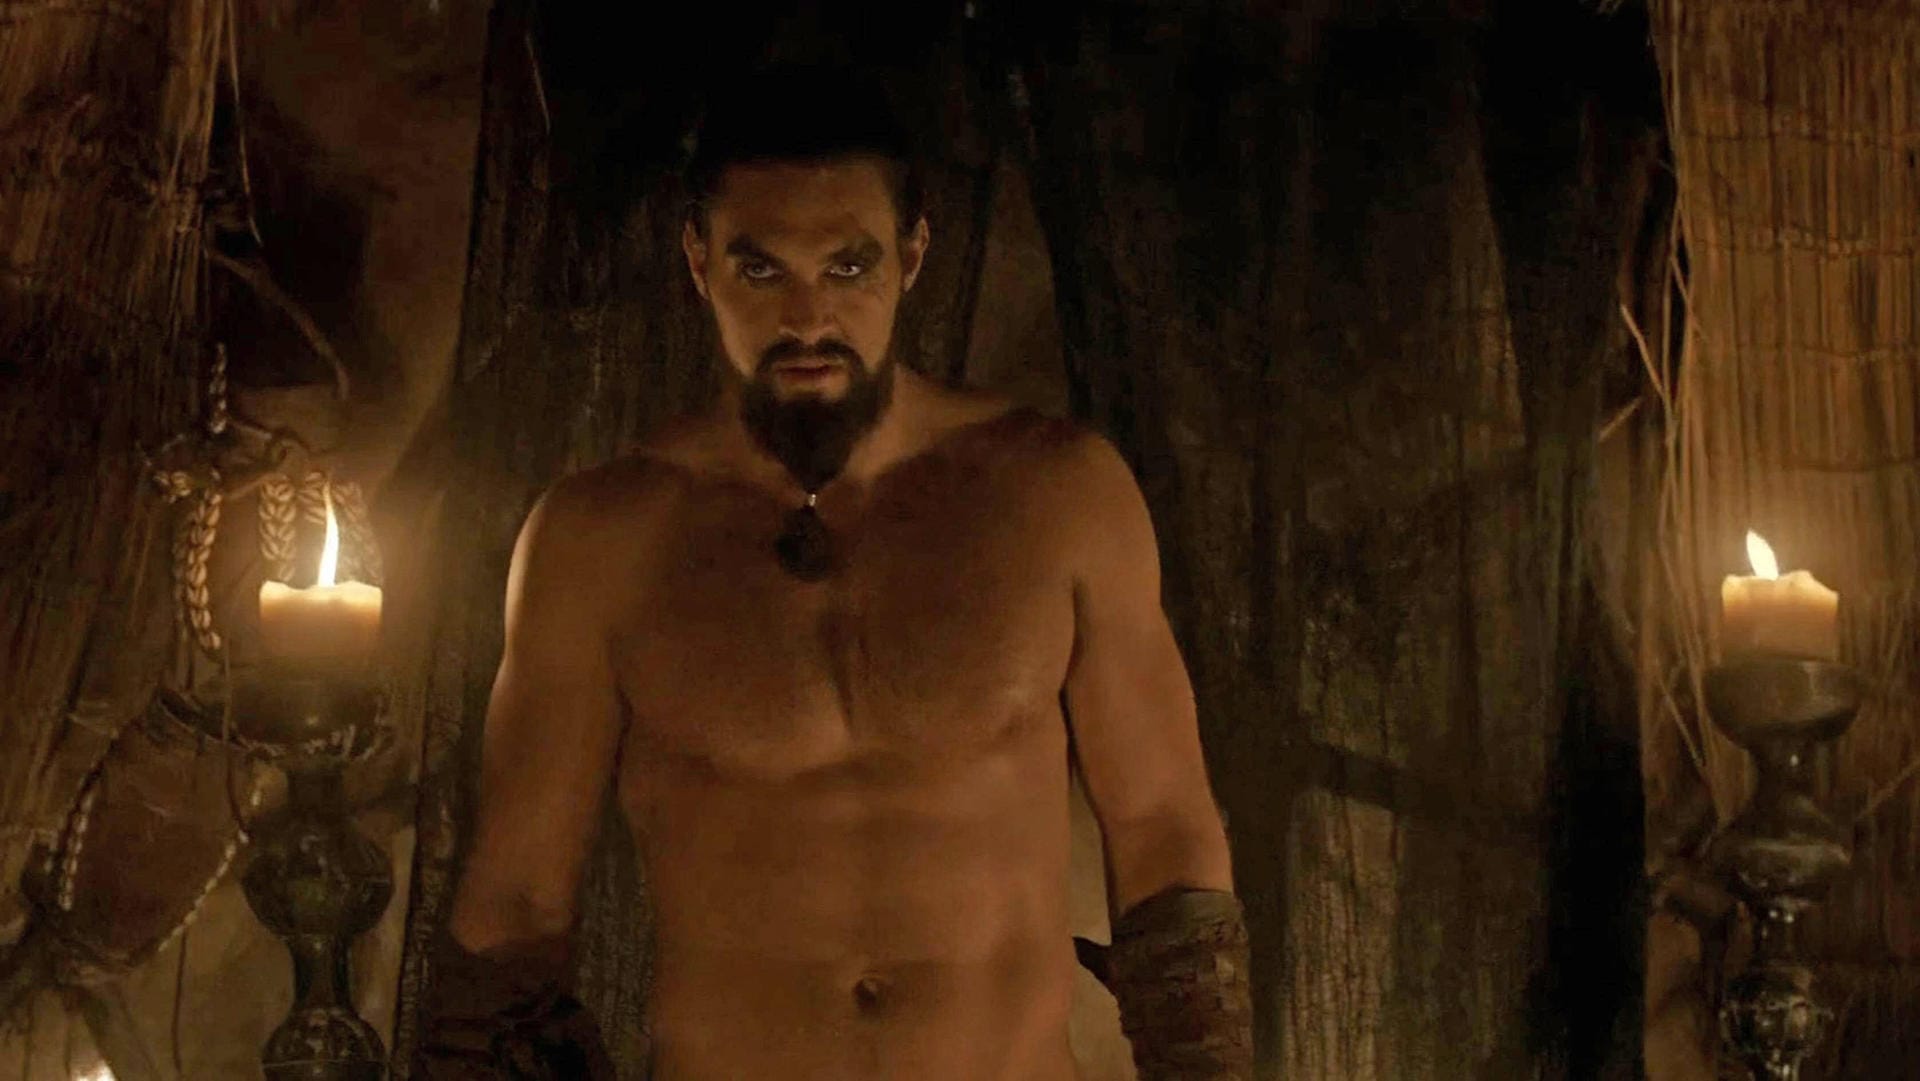 Ebenfalls im Jahr 2011 bekam Momoa eine Rolle in "Game of Thrones": Die des Dothraki-Anführers Khal Drogo.